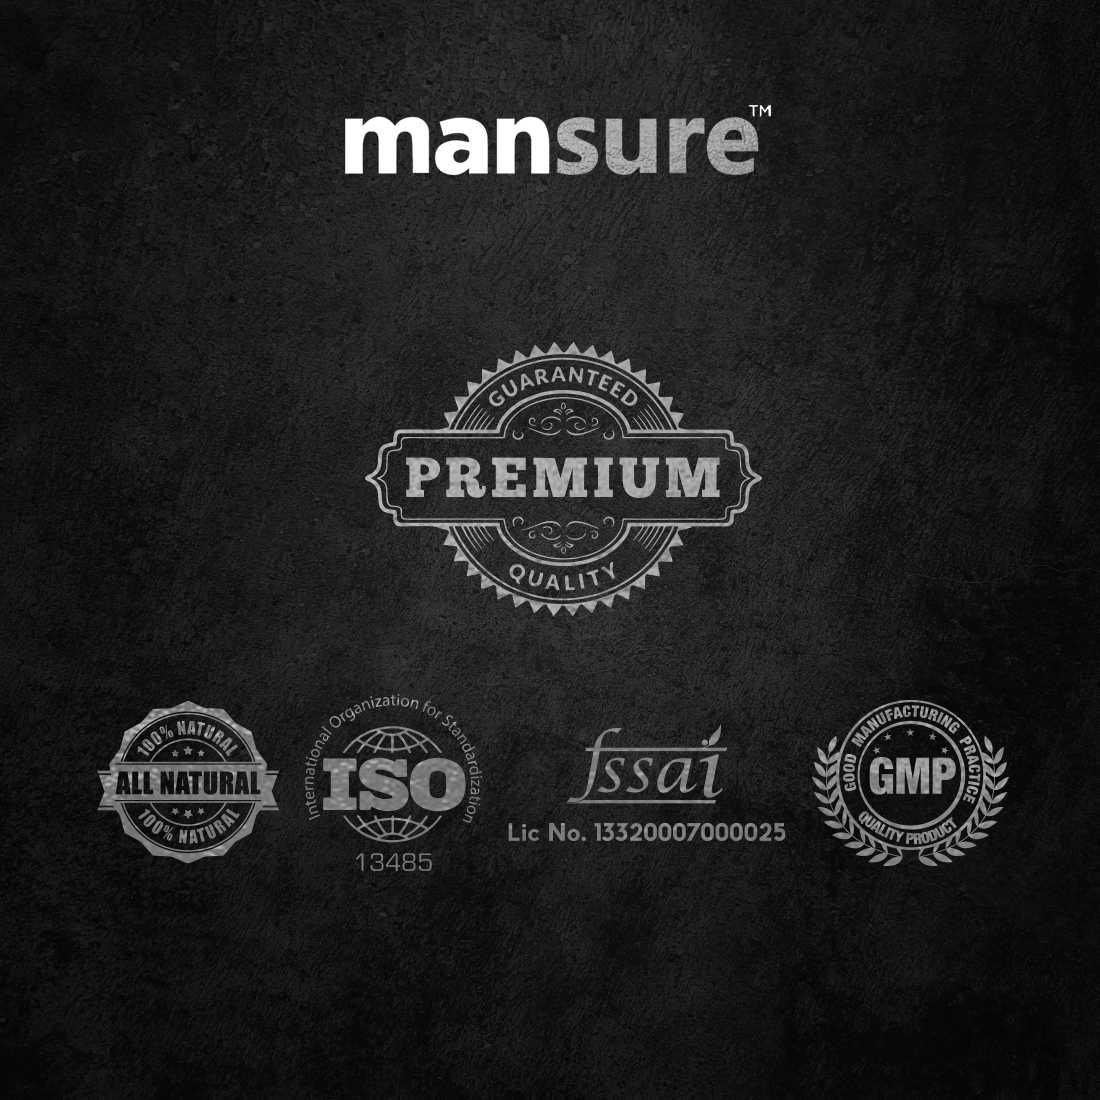 ManSure UPRIGHT for Men's Health - 60 Capsules ManSure